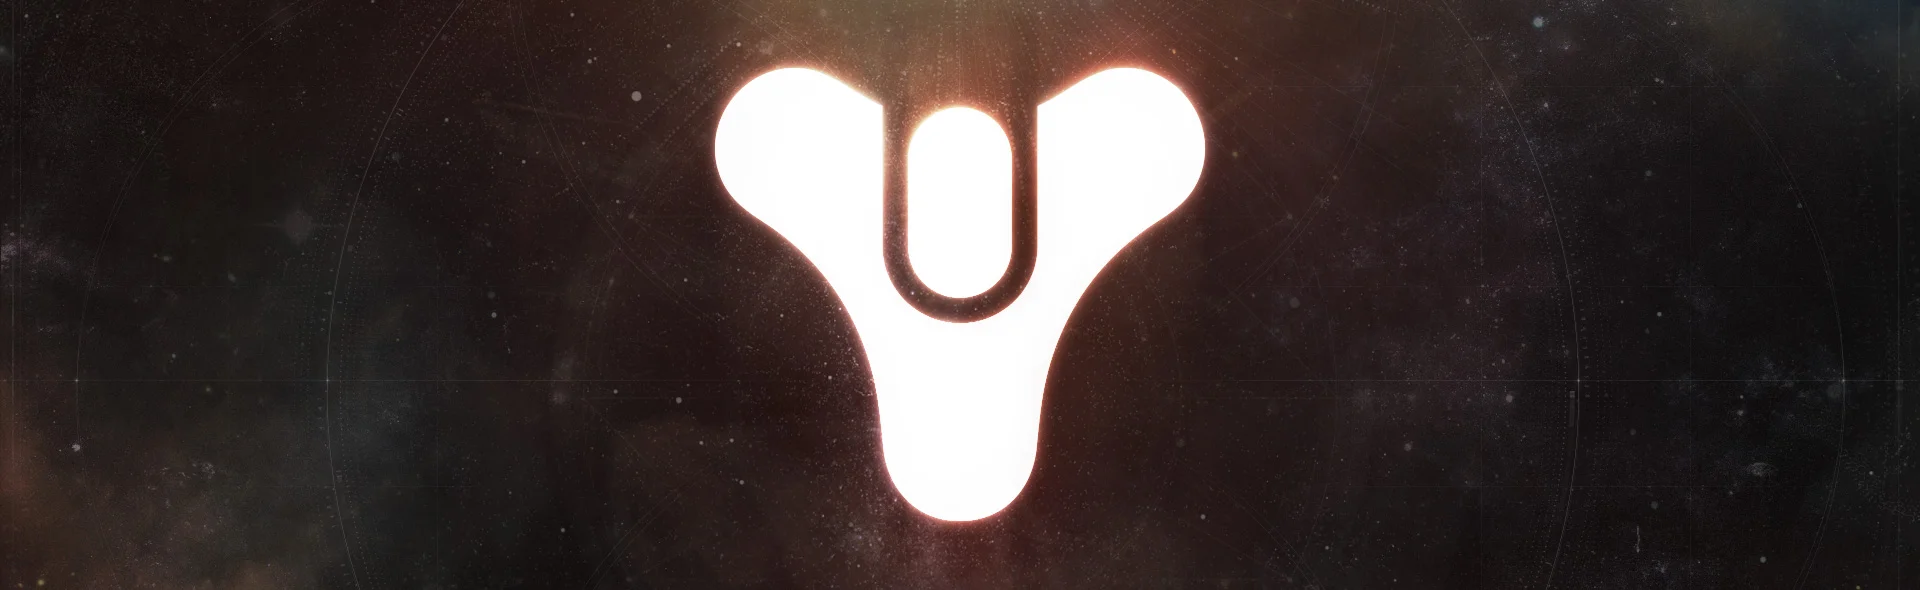 В Destiny 2 появится «экспериментальный PvP-контент» - фото 1